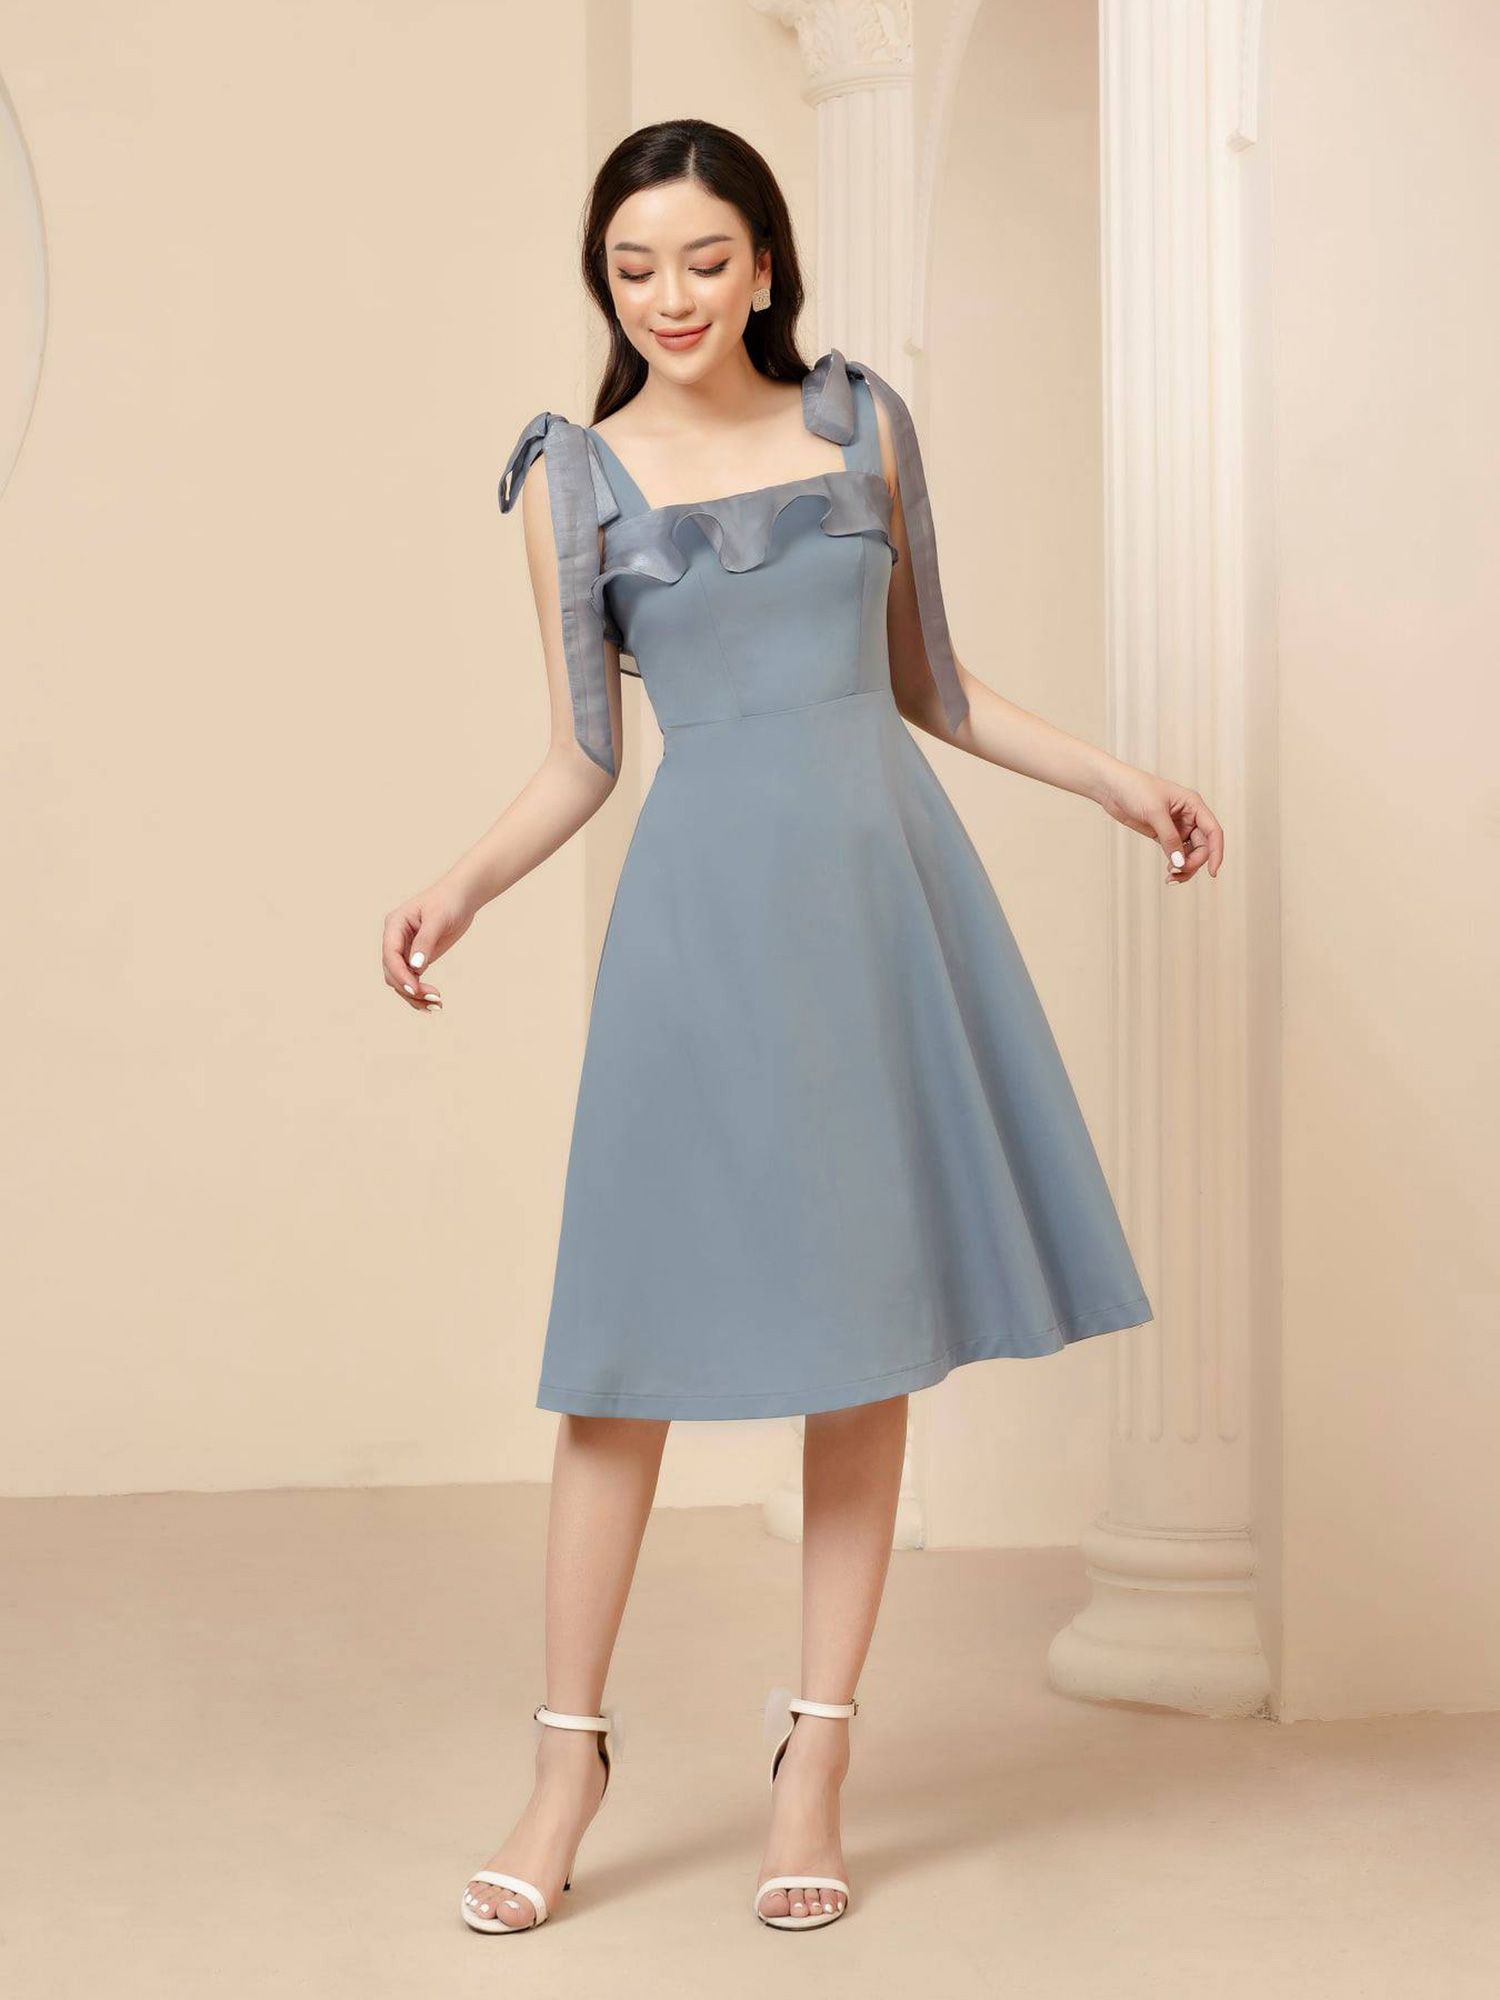 Đầm xanh bèo 2 dây viền nhúng phối nút gỗ - Bán sỉ thời trang mỹ phẩm